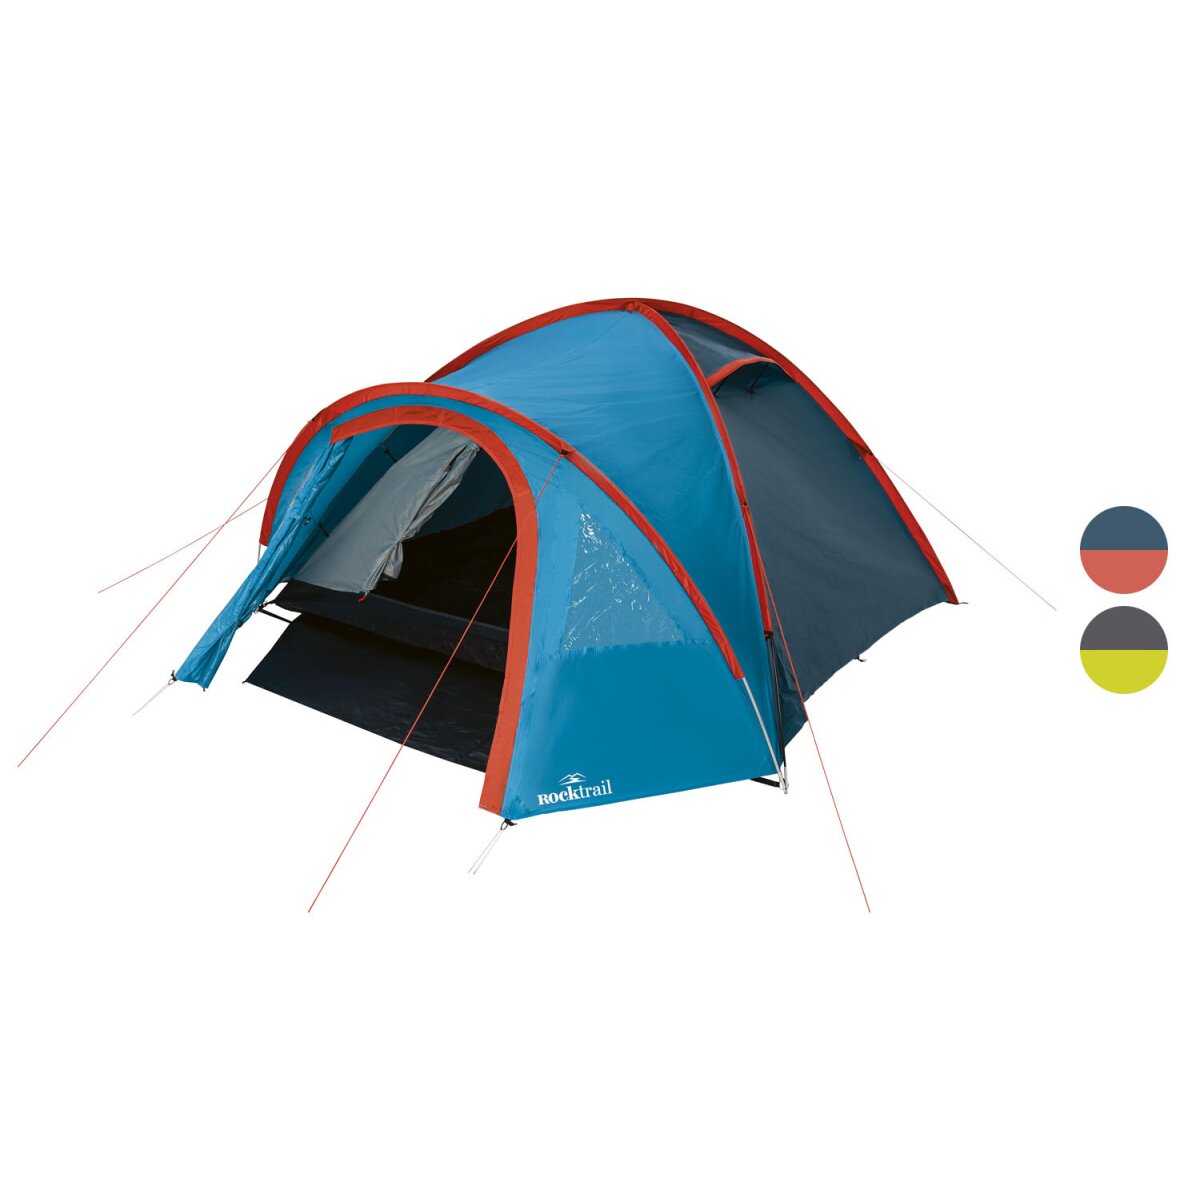 mit Personen, Doppeldach Campingzelt 34,99 für - B-Ware, Rocktrail 4 €